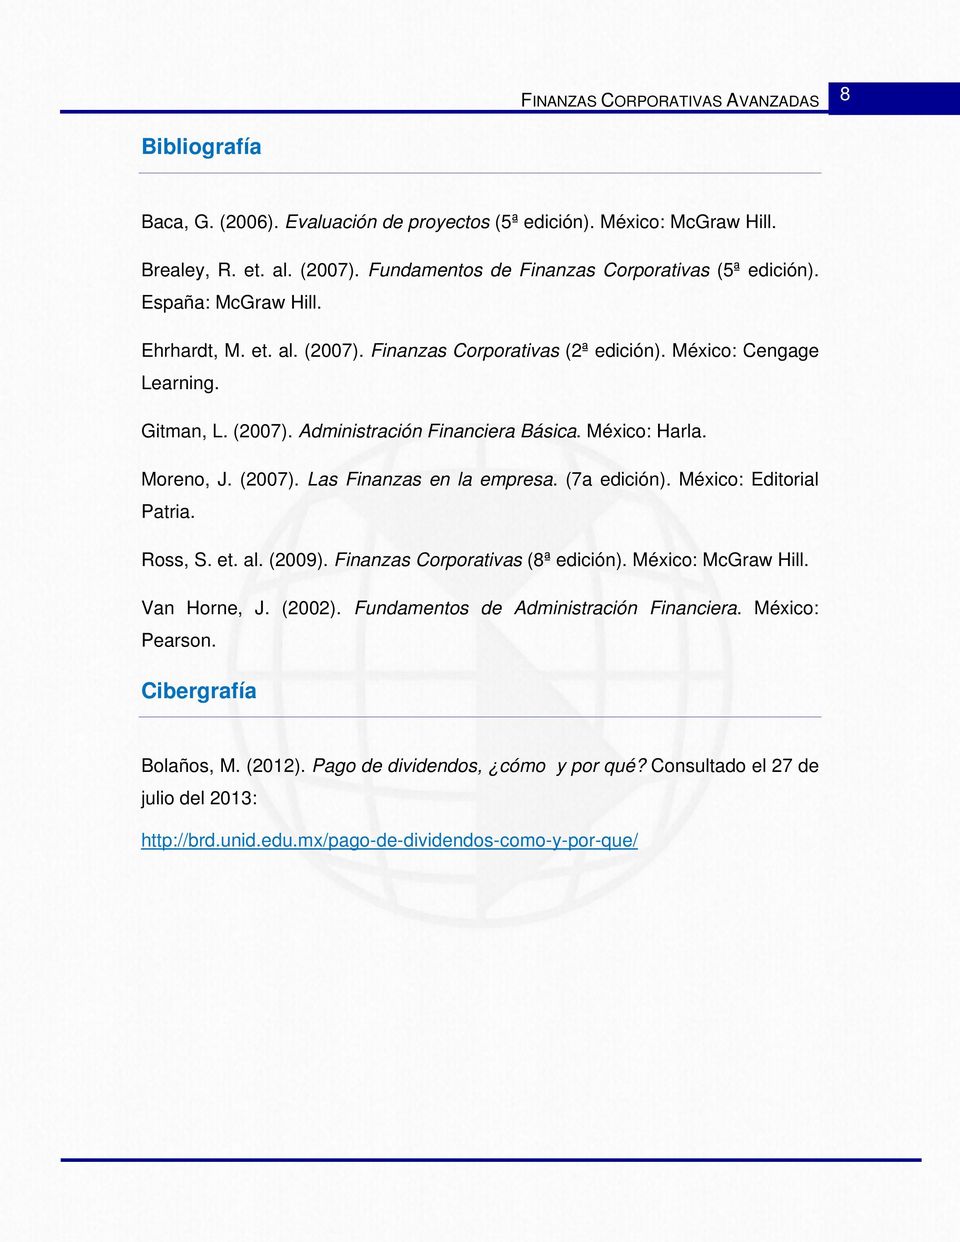 (7a edición). México: Editorial Patria. Ross, S. et. al. (2009). Finanzas Corporativas (8ª edición). México: McGraw Hill. Van Horne, J. (2002). Fundamentos de Administración Financiera.